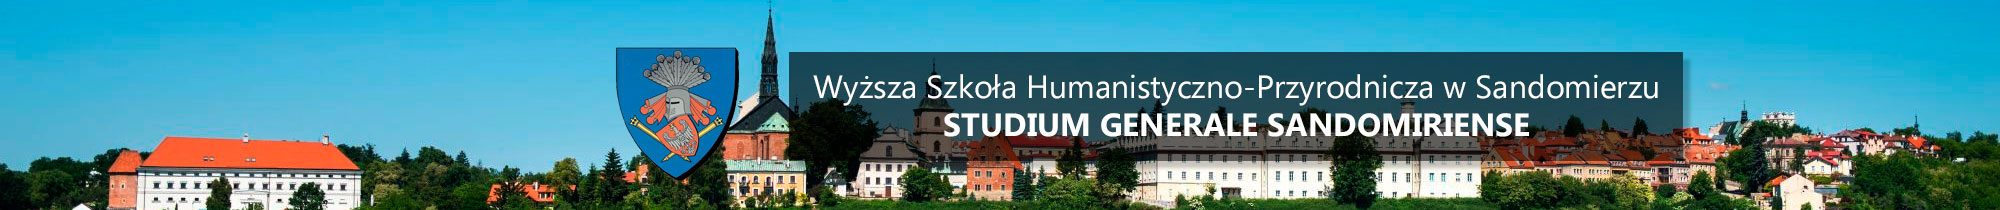 Wyższa Szkoła Humanistyczno-Przyrodnicza w Sandomierzu